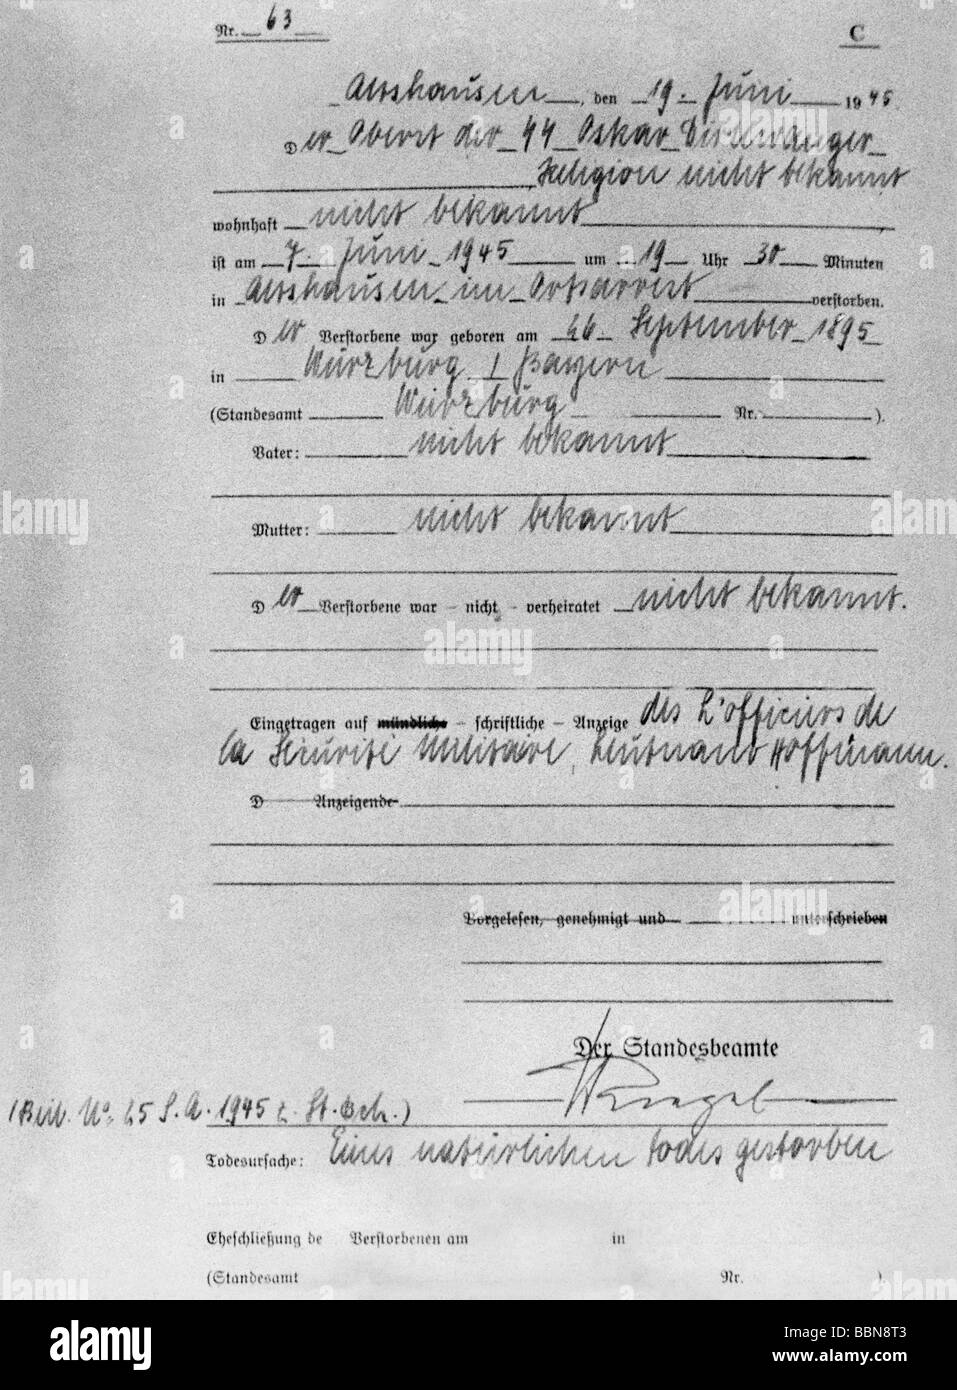 Dirolewanger, Oskar, 26.9.1895 - 6.6.1945, officier militaire allemand (SS), certificat de décès, Althausen, 19.6.1945, Banque D'Images